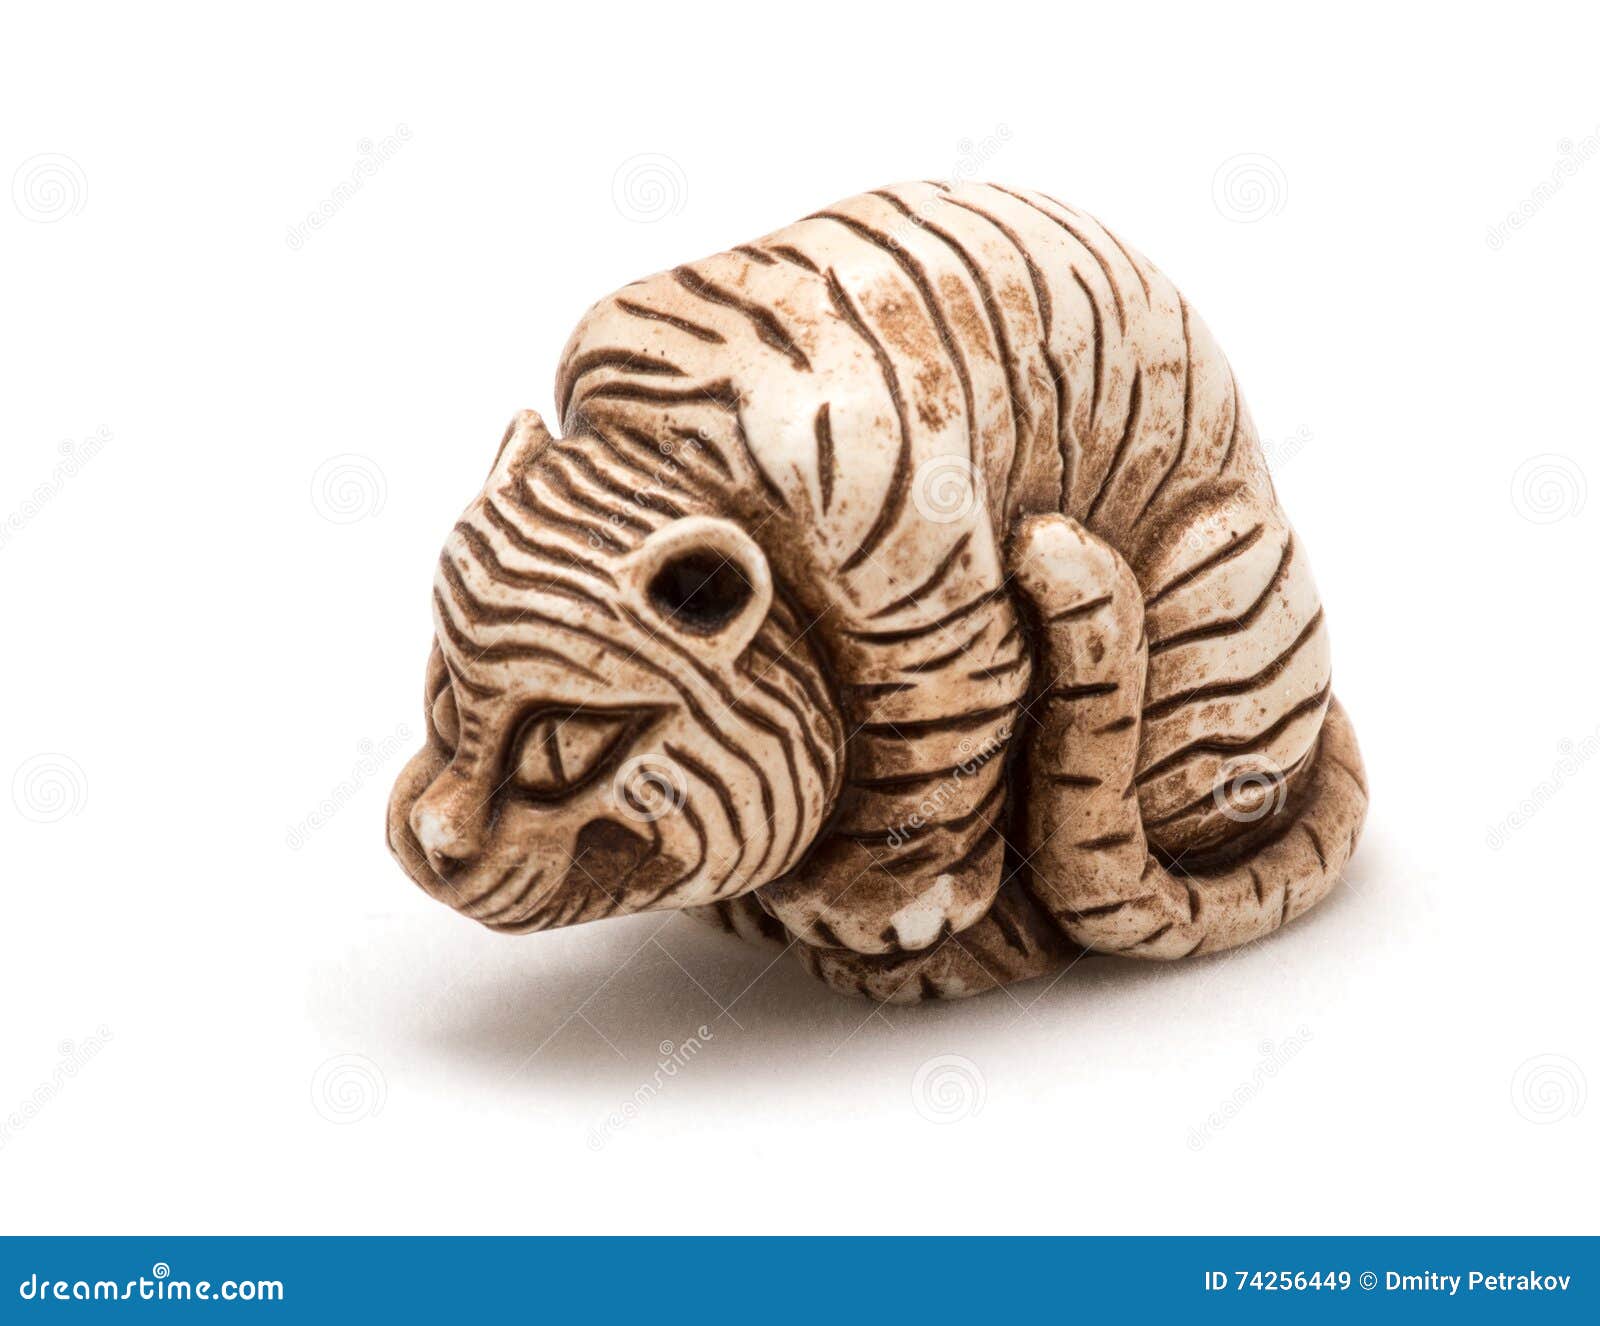 Petit Accessoire Japonais D'un Tigre Posé D'isolement Image stock